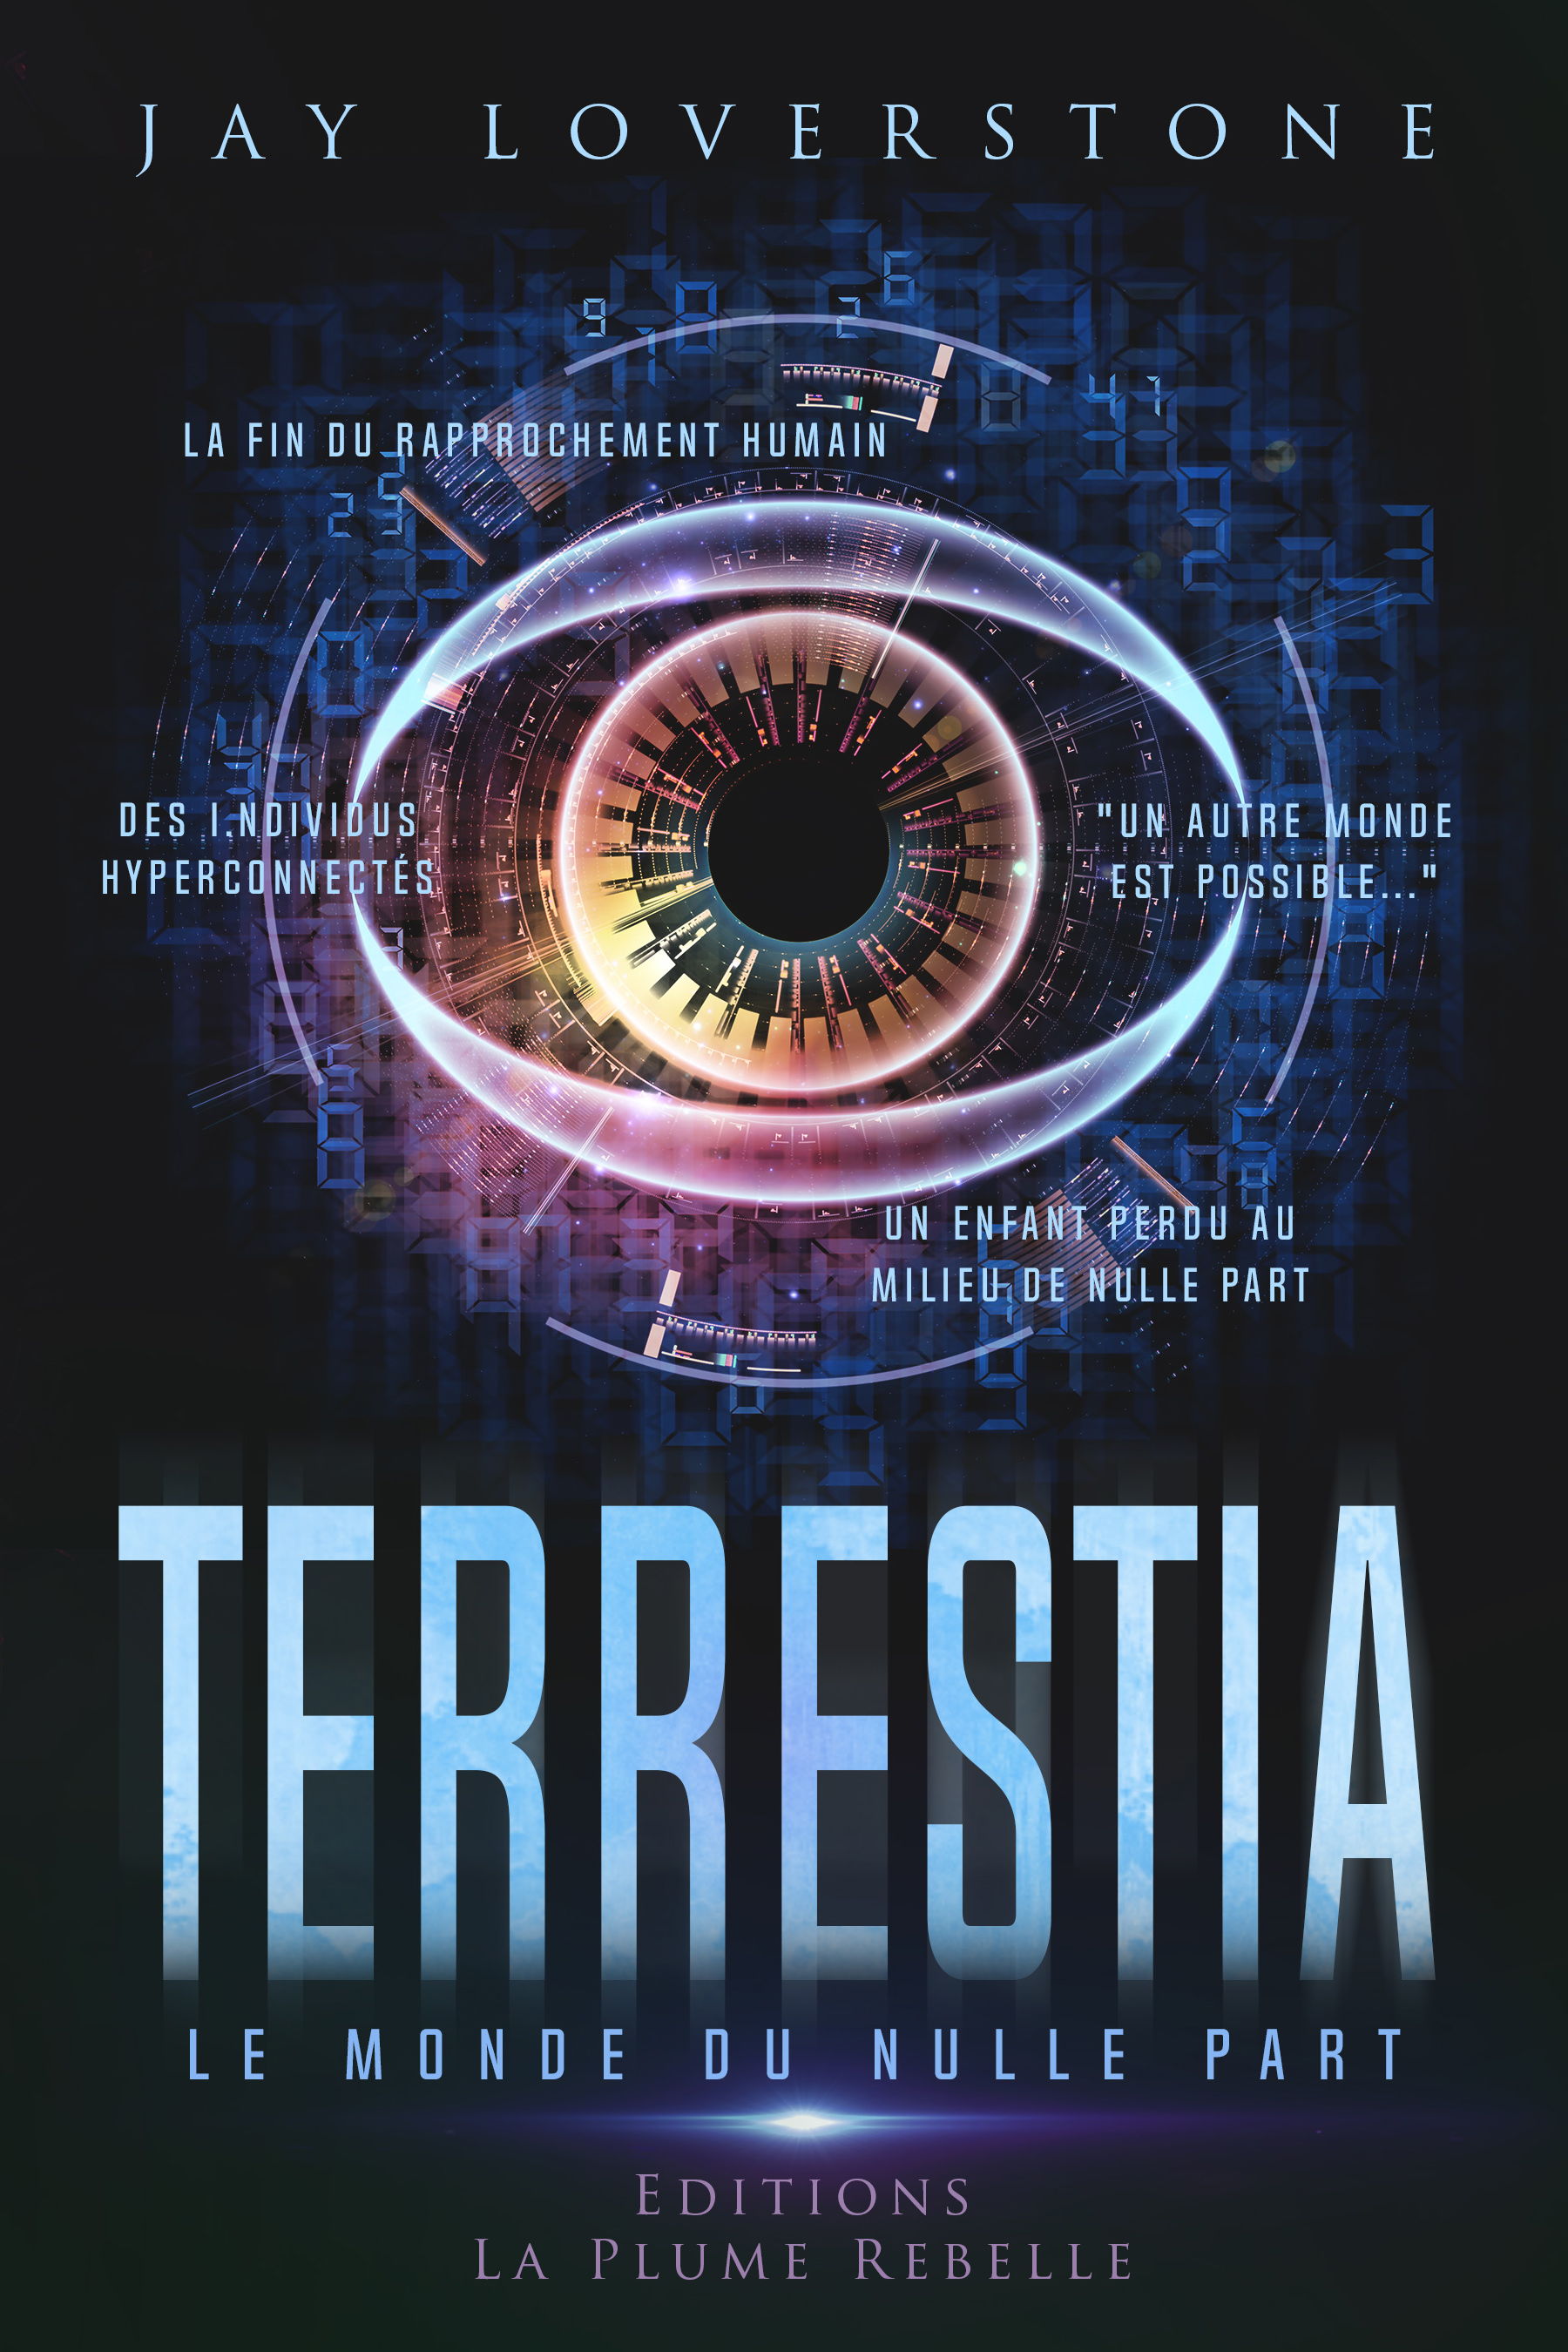 Plongée dans la science-fiction avec «Terrestia», le 3ème ouvrage du Bastiais Maxime Jal Orsatelli 